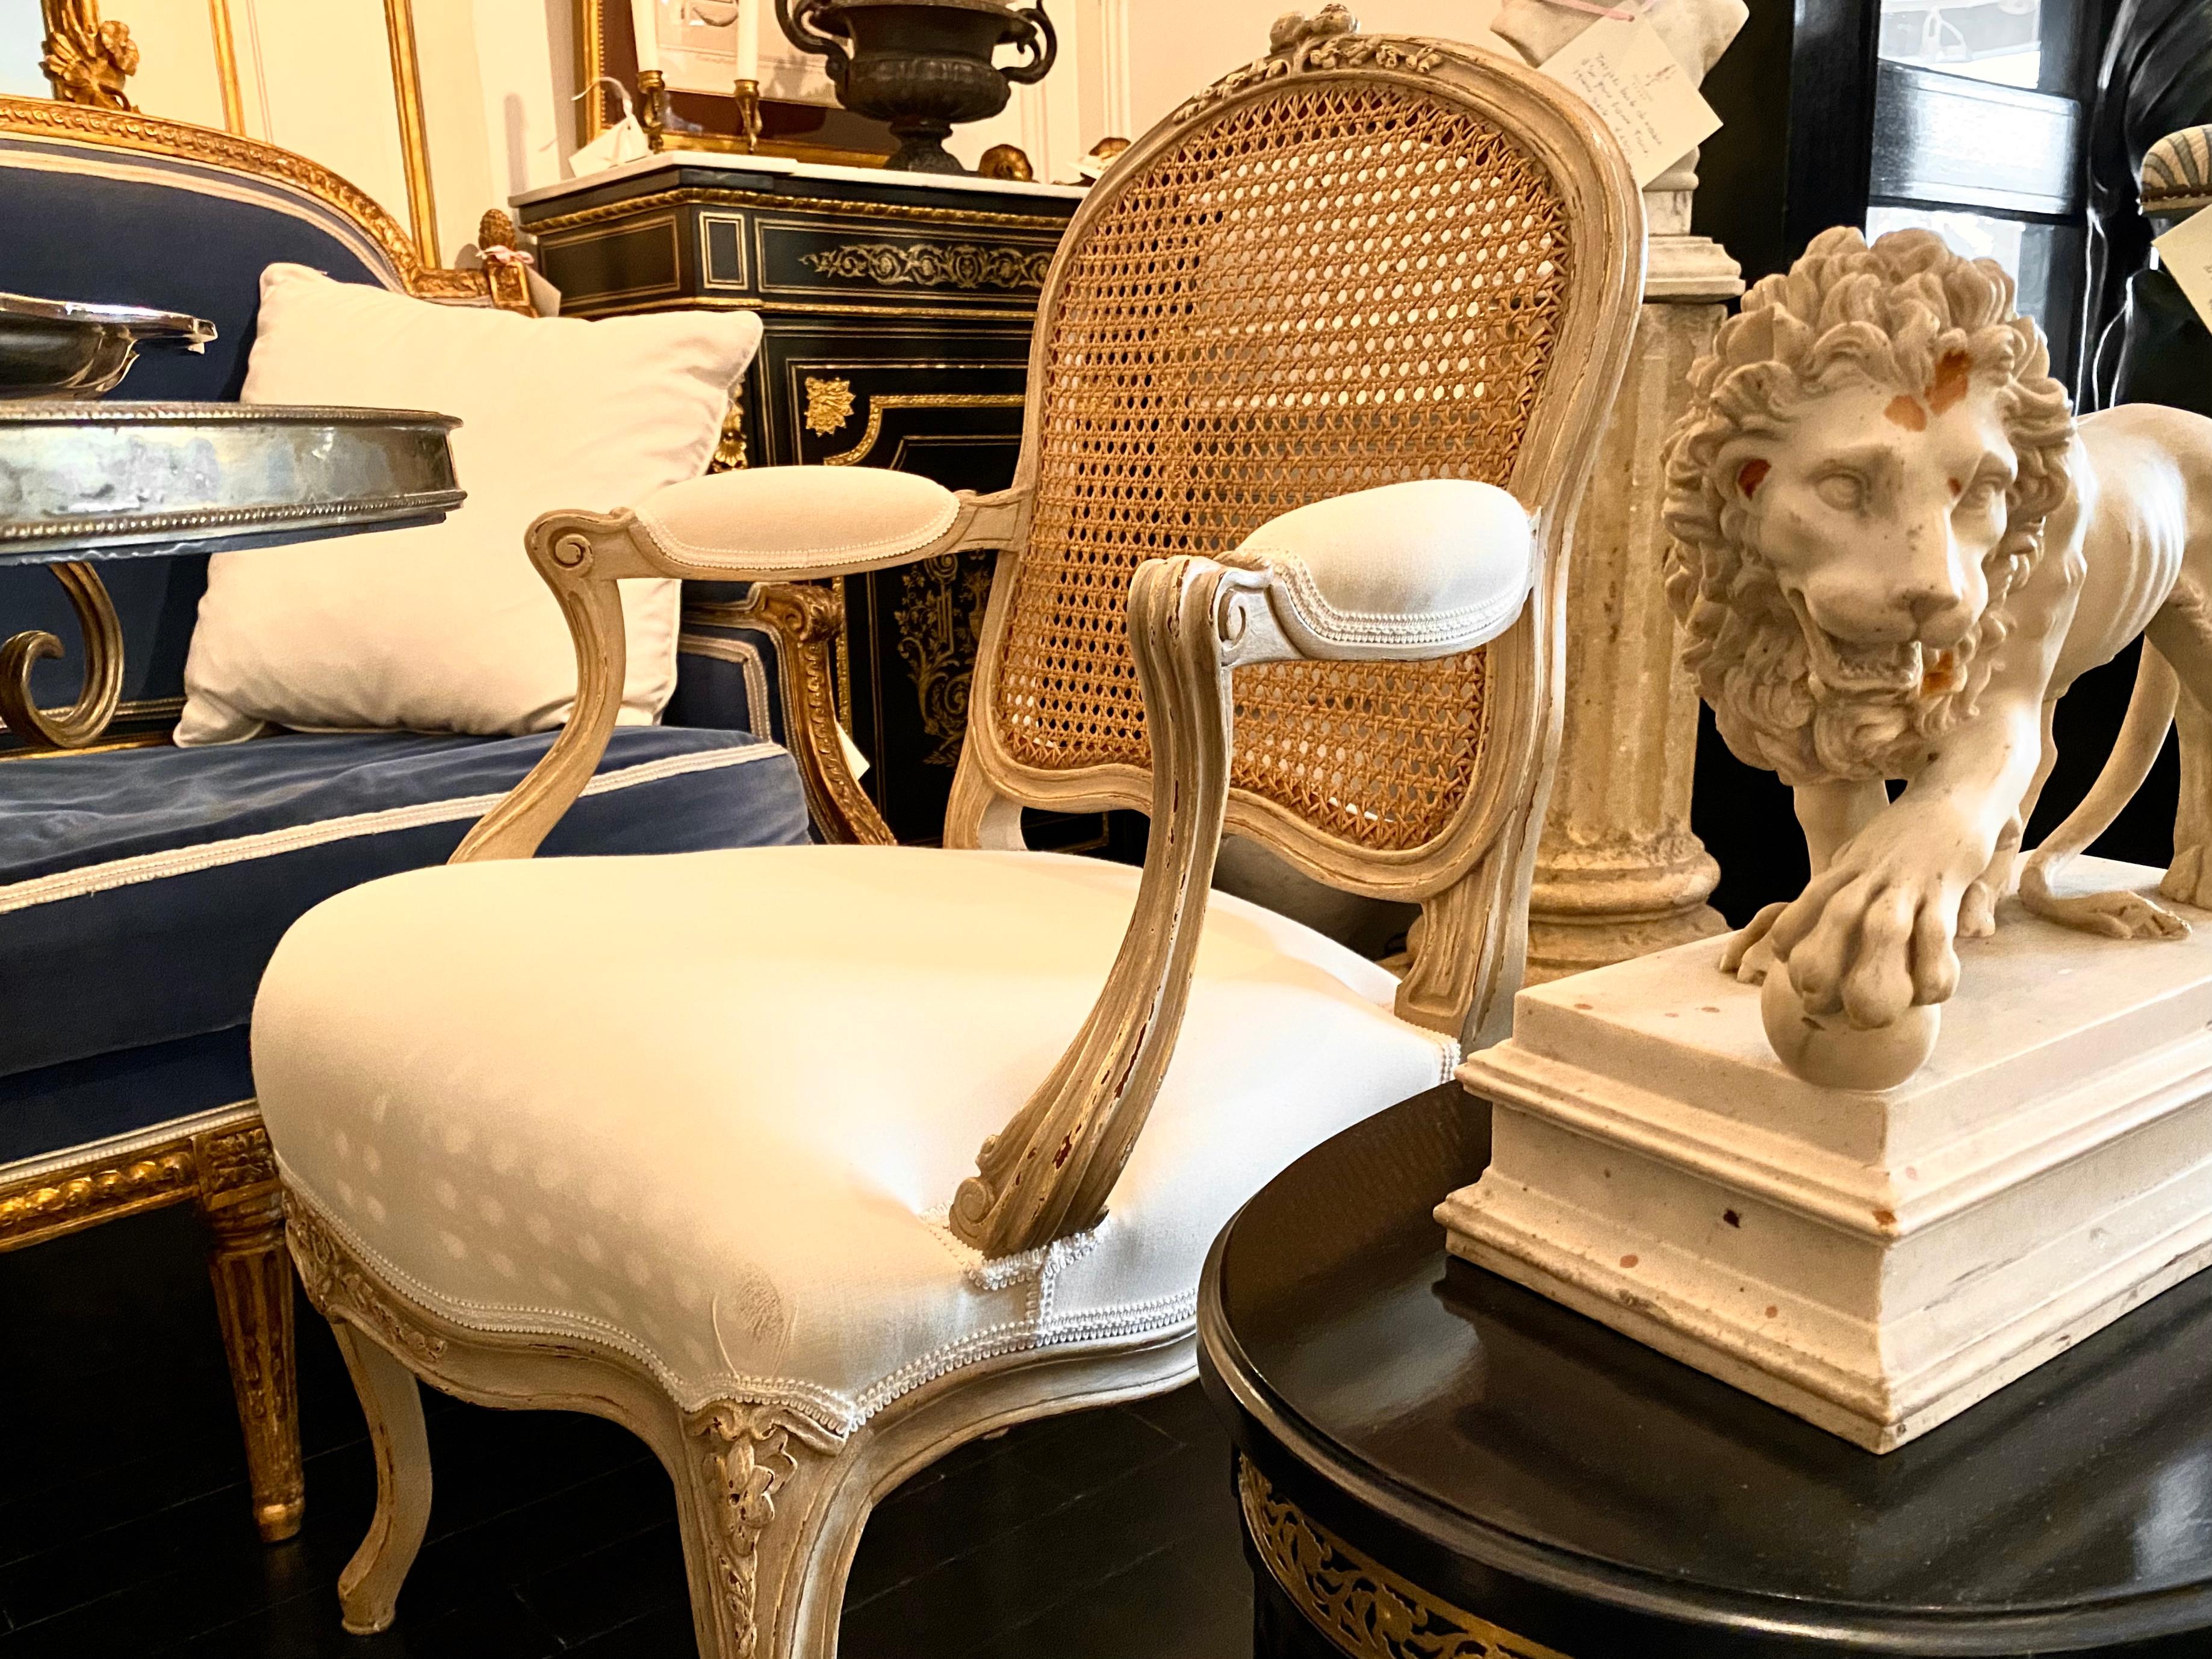 Paire de fauteuils de style Louis XV français, dossier canné.
Modèle classique à lignes pures en gris Trianon avec dossier en rotin naturel et assise rembourrée en blanc cassé.
Un total de 6 fauteuils est disponible.